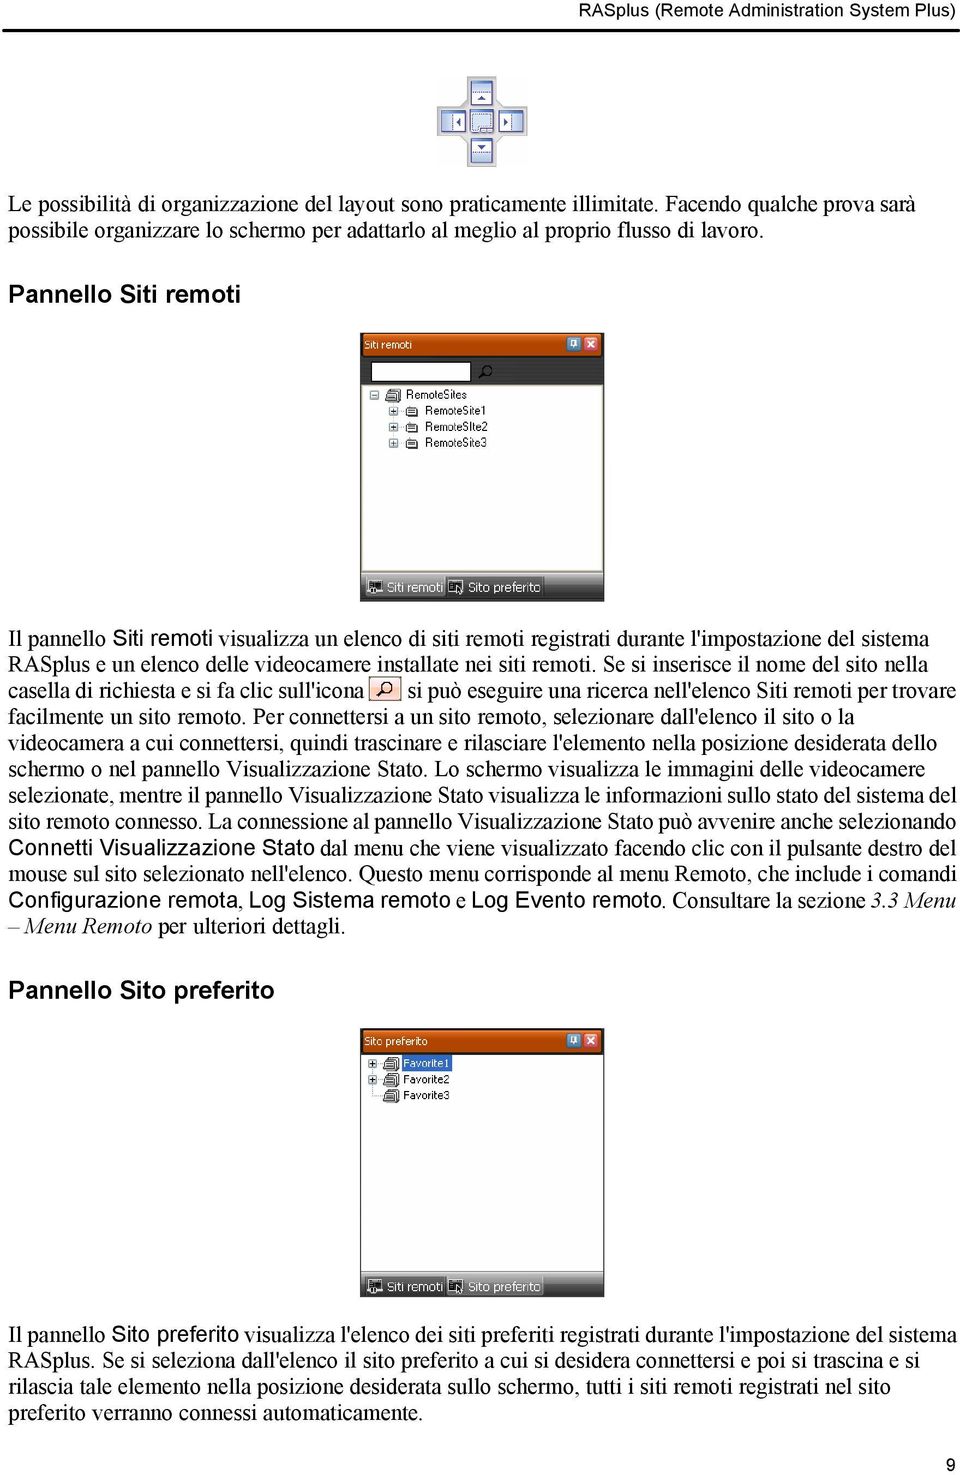 Pannello Siti remoti Il pannello Siti remoti visualizza un elenco di siti remoti registrati durante l'impostazione del sistema RASplus e un elenco delle videocamere installate nei siti remoti.